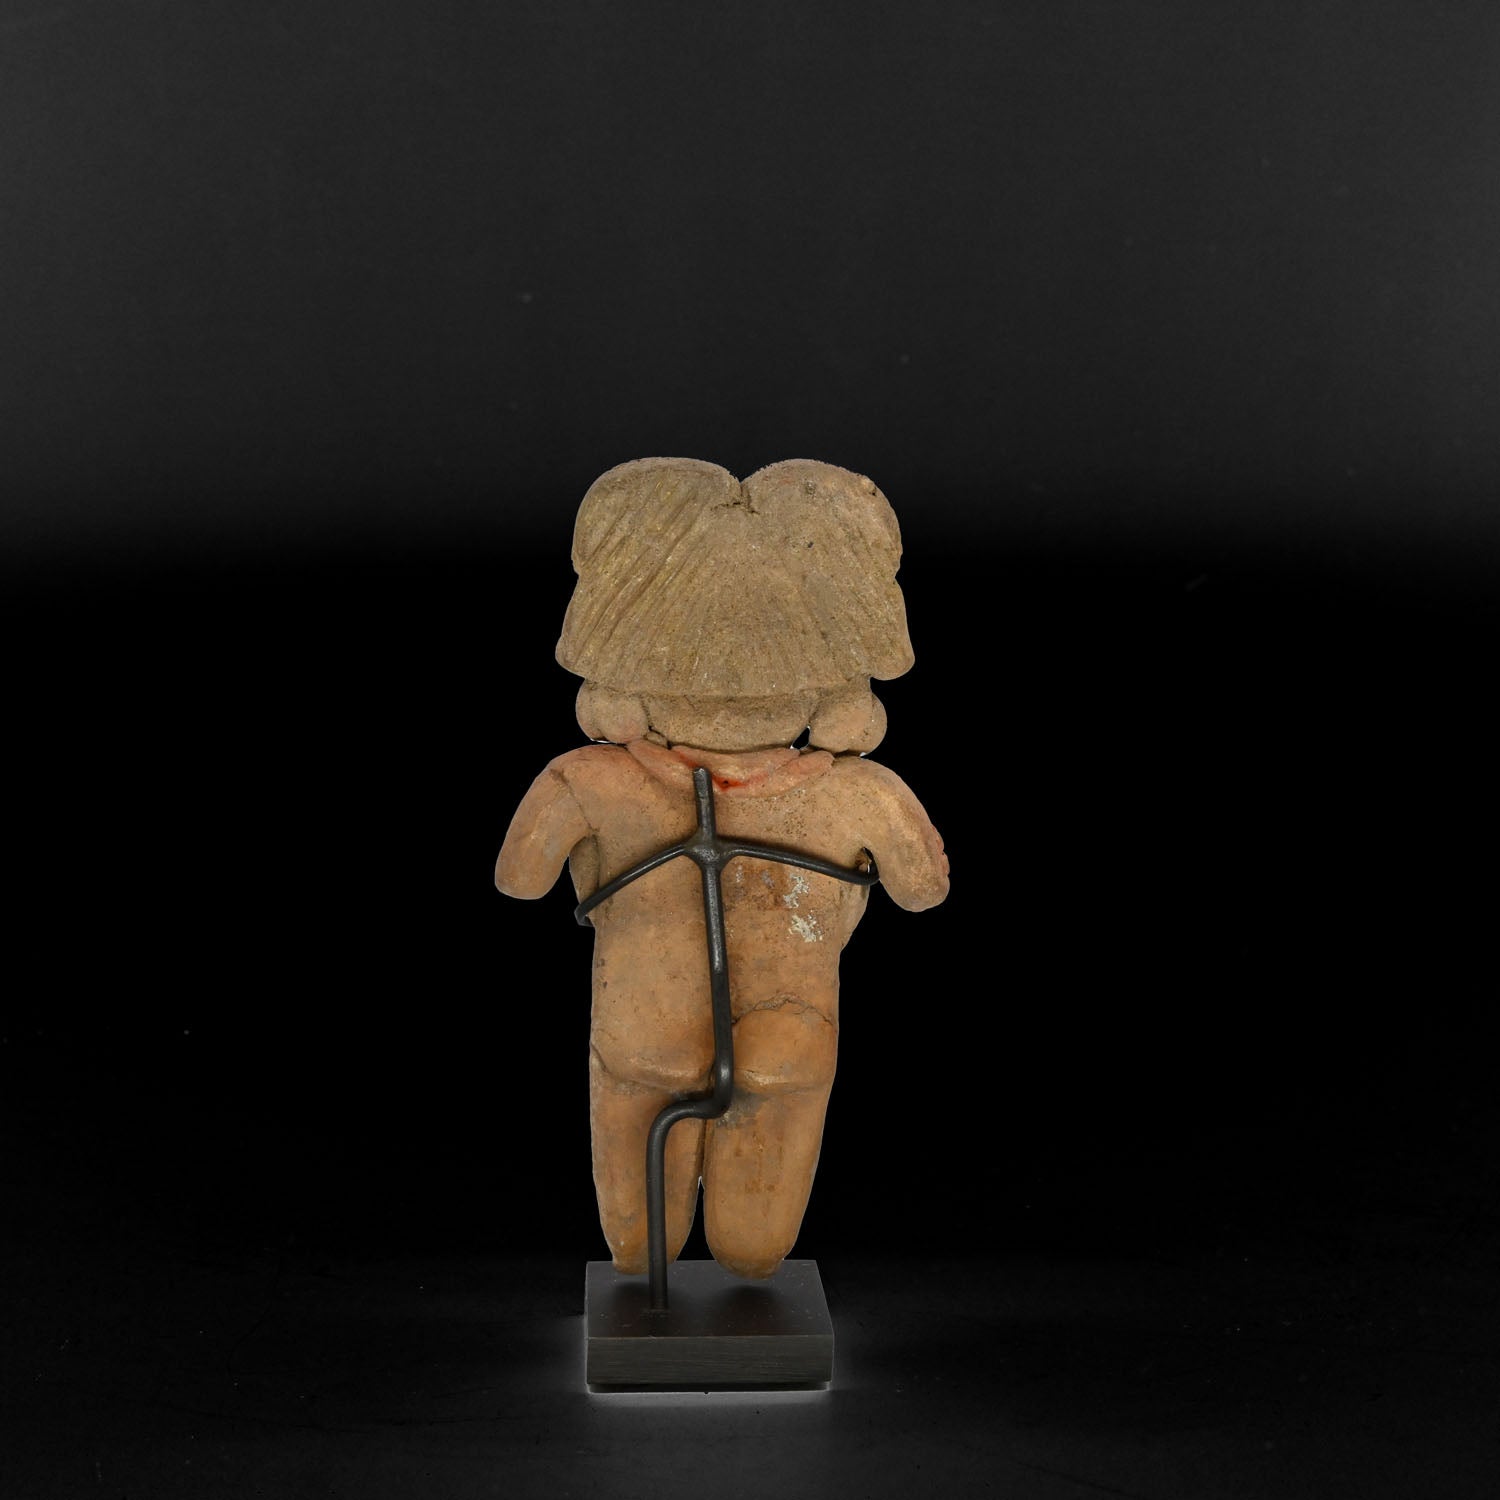 A Chupicuaro Terracotta "Pretty Lady" Figure, Pre-Classic Period, ca. 400 - 100 BCE